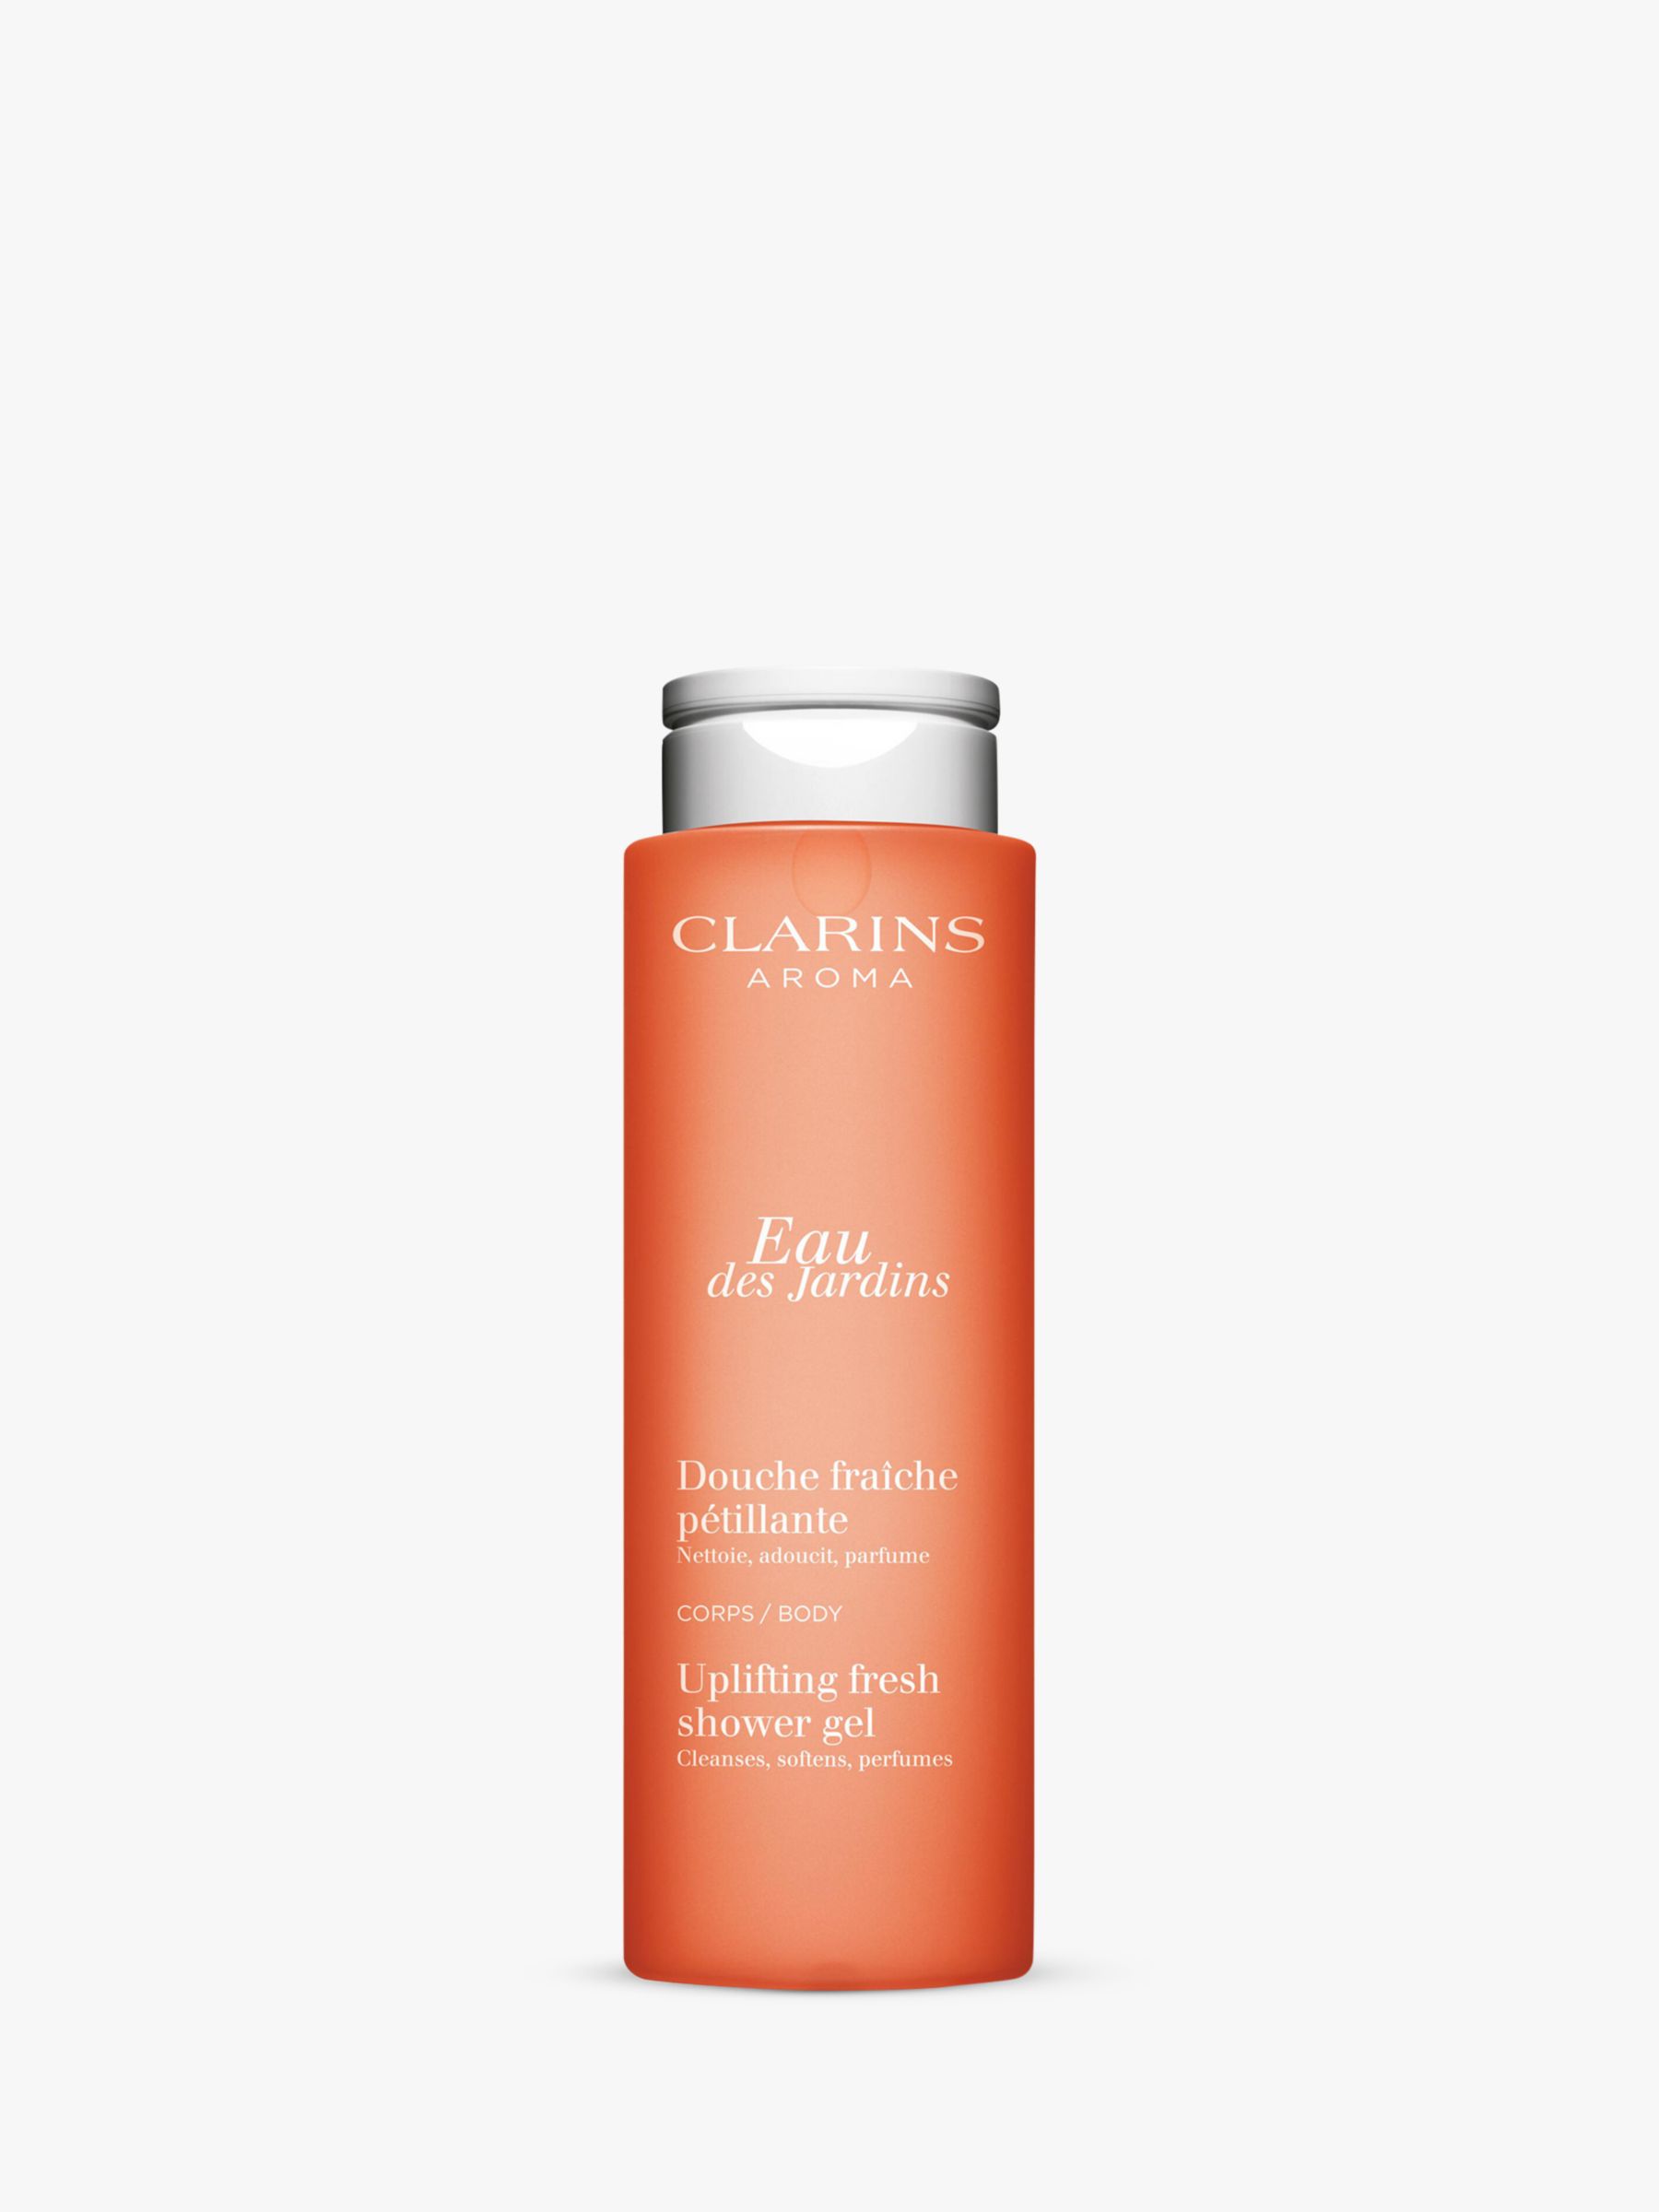 Clarins Eau des Jardins Uplifting Fresh Shower Gel, 200ml